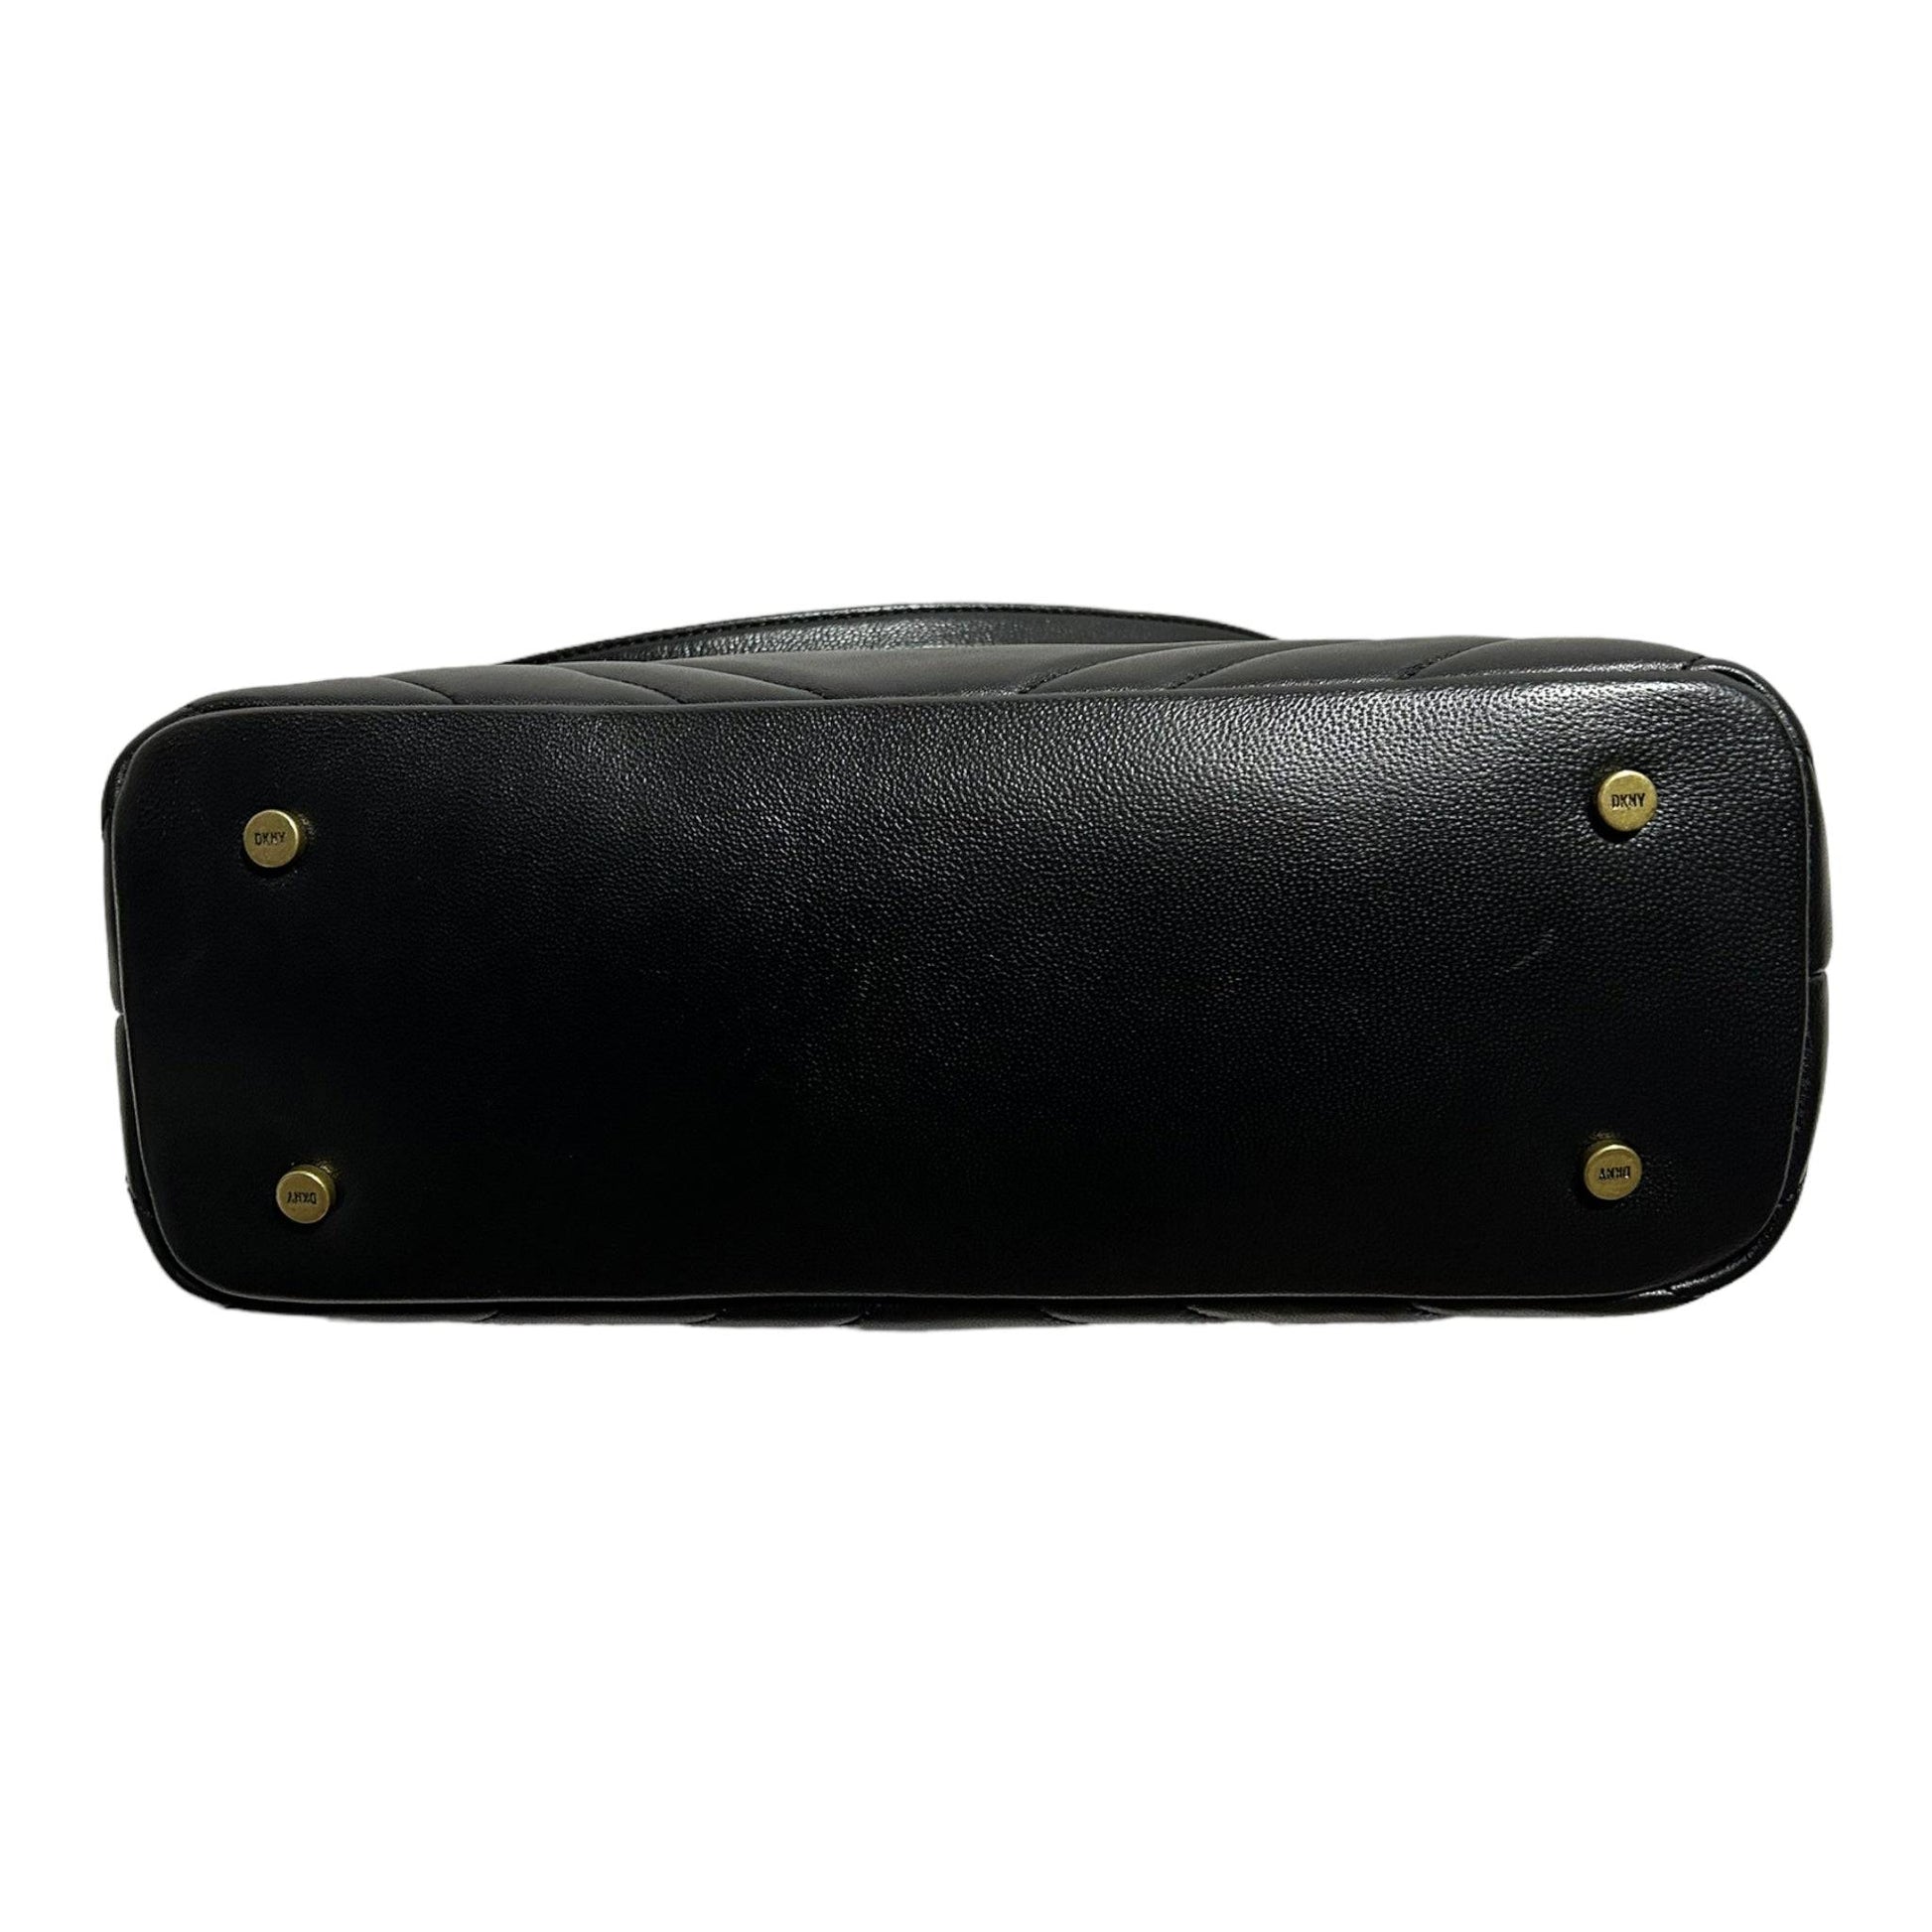 DKNY Vivian Medium Tote Handbag - Recurring.Life